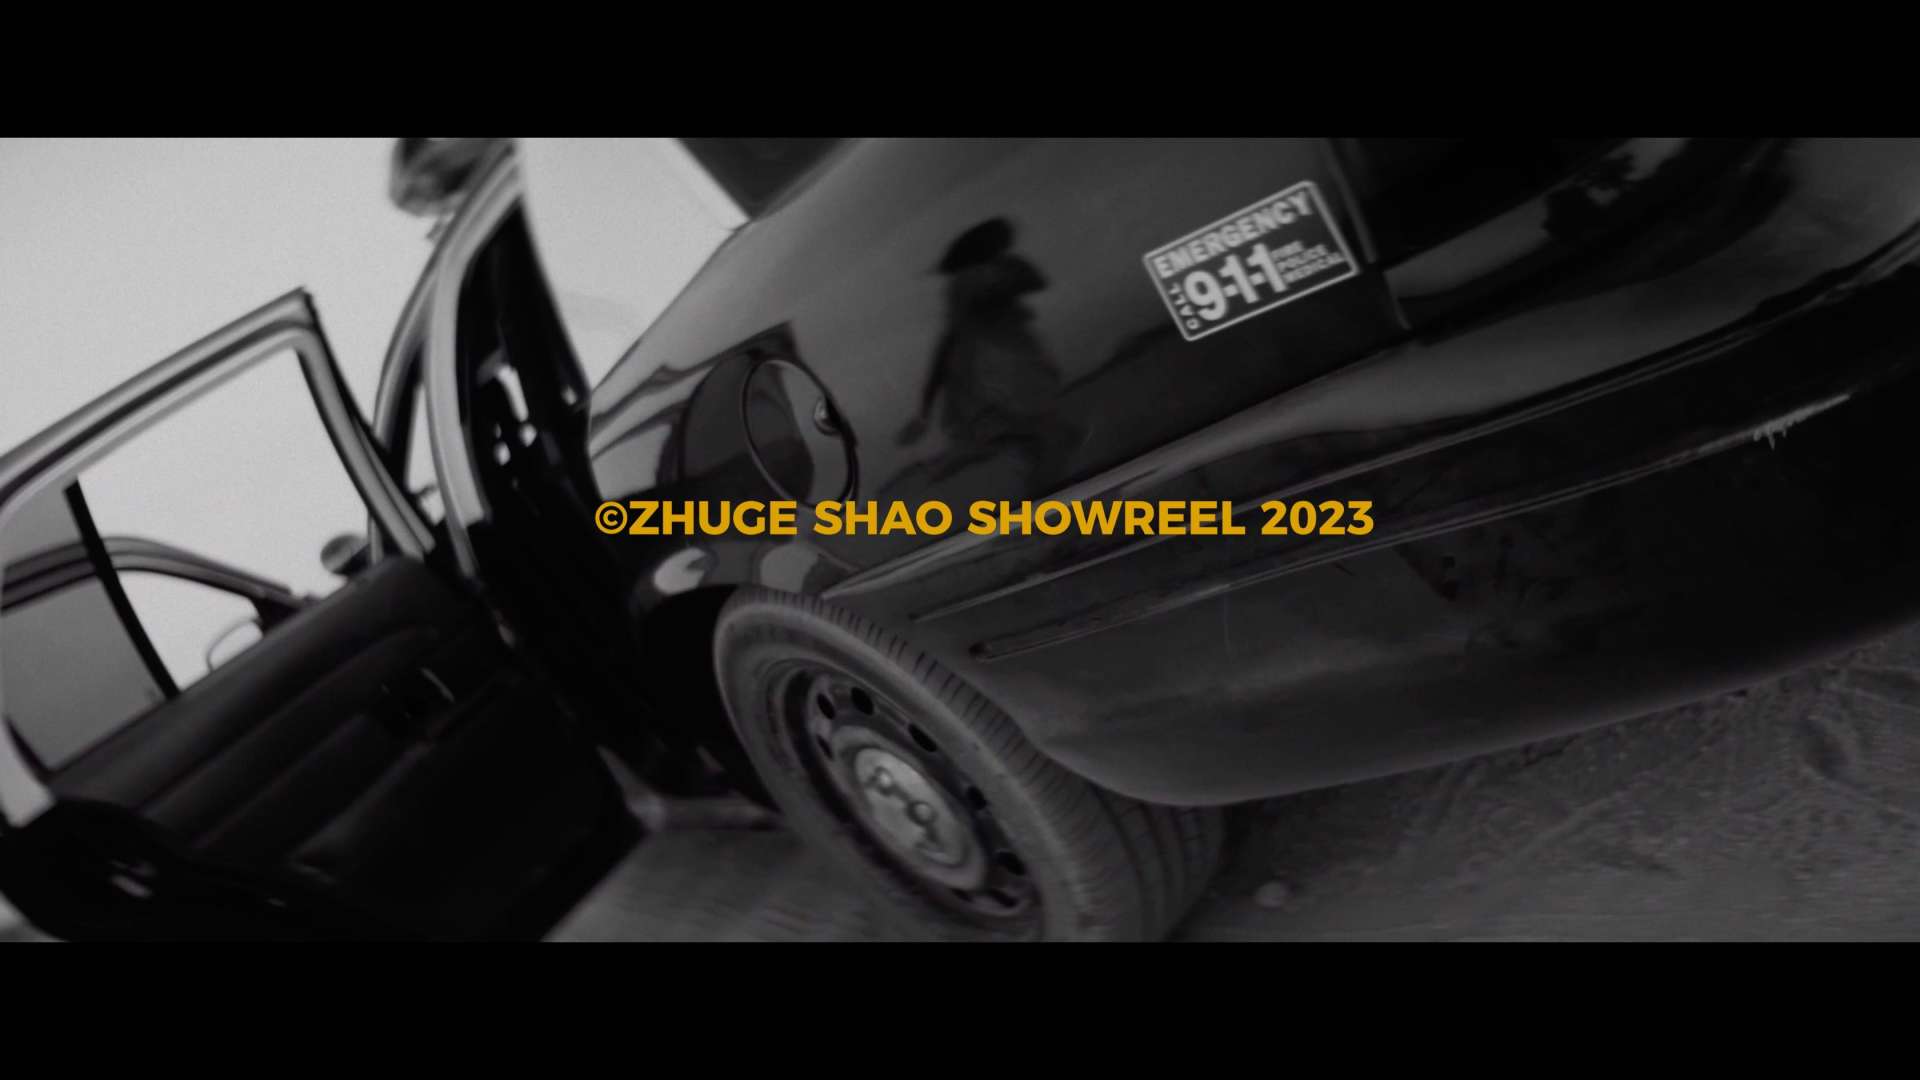 Zhuge Shao showreel